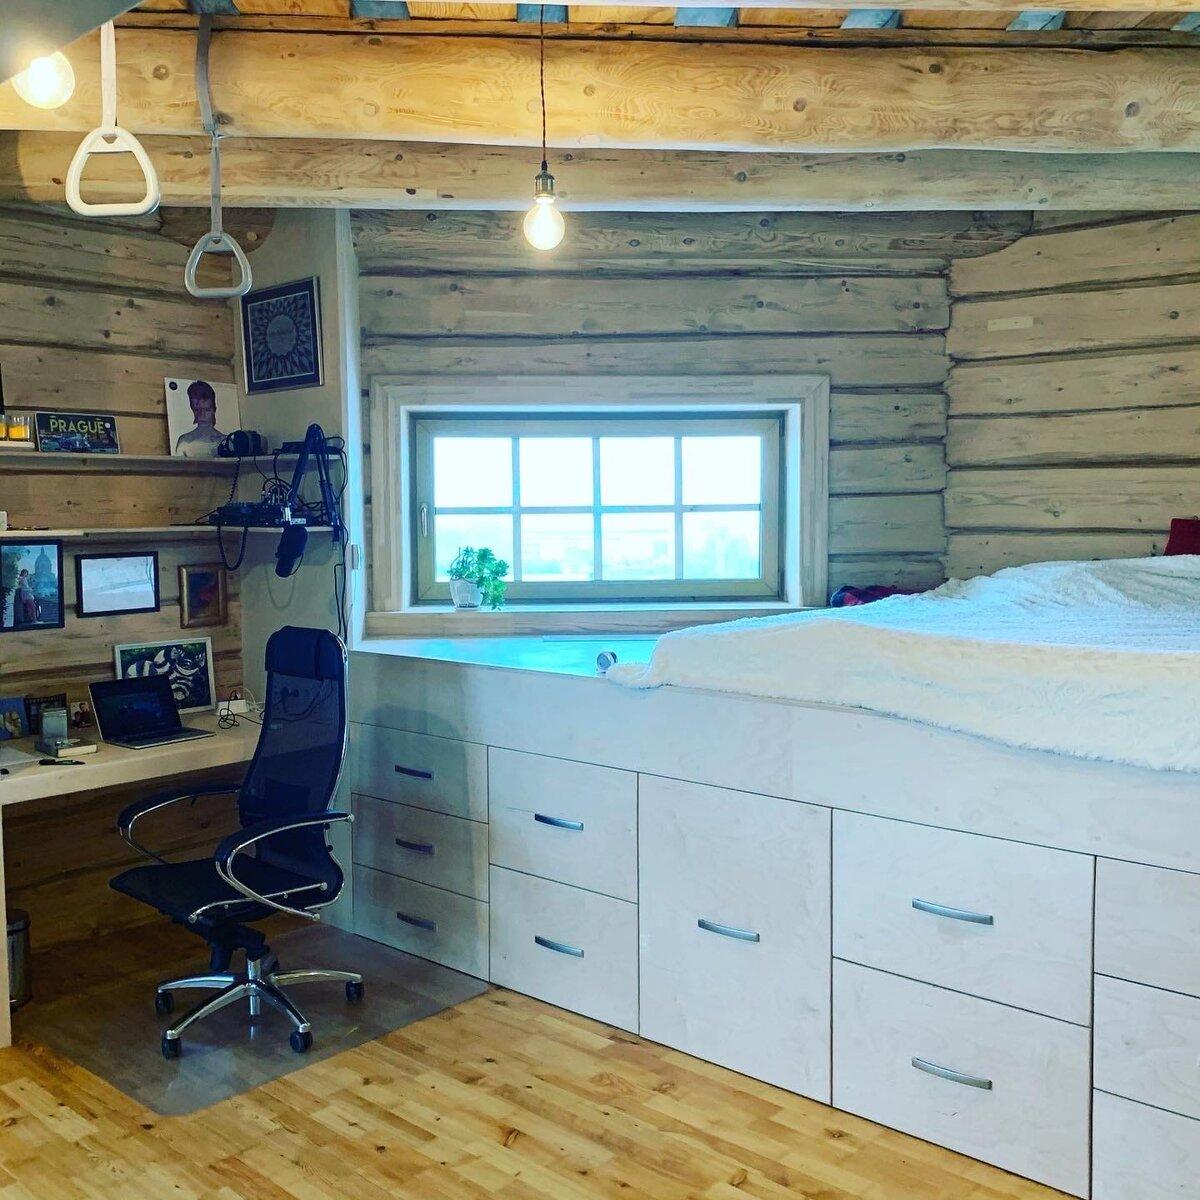 Спальня, рабочий кабинет и места для хранения в одном флаконе. Круто получилось! Источник изображения: https://vk.com/lunev.tomsk